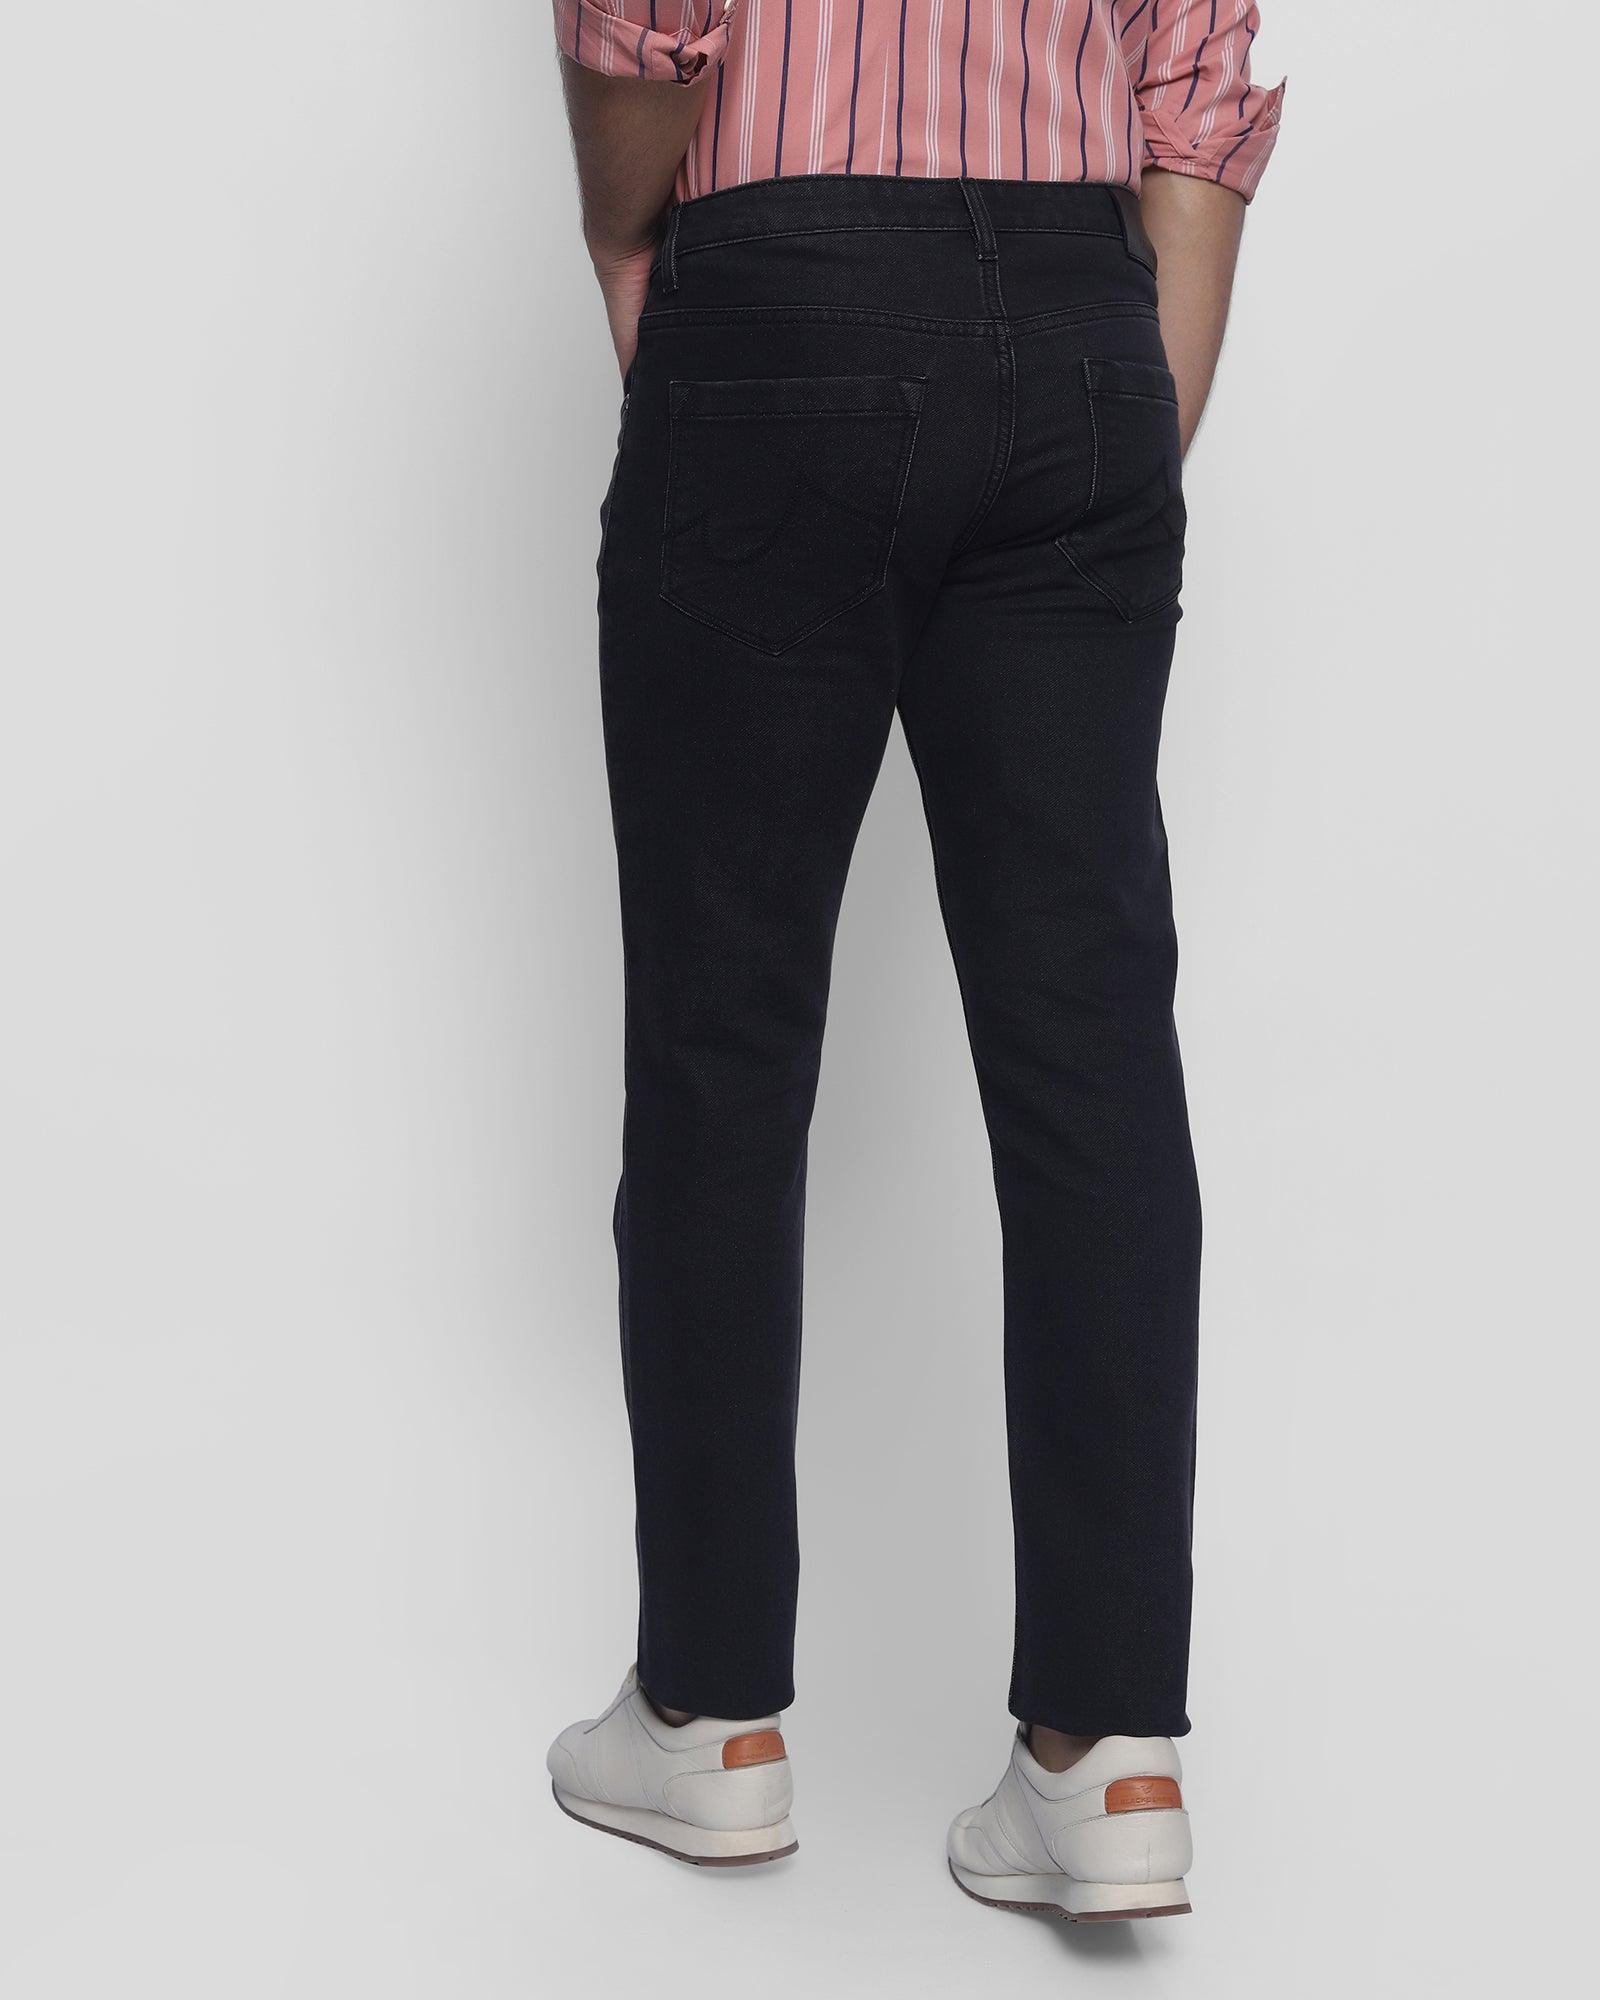 Medium Black Denim Fabric Jeans